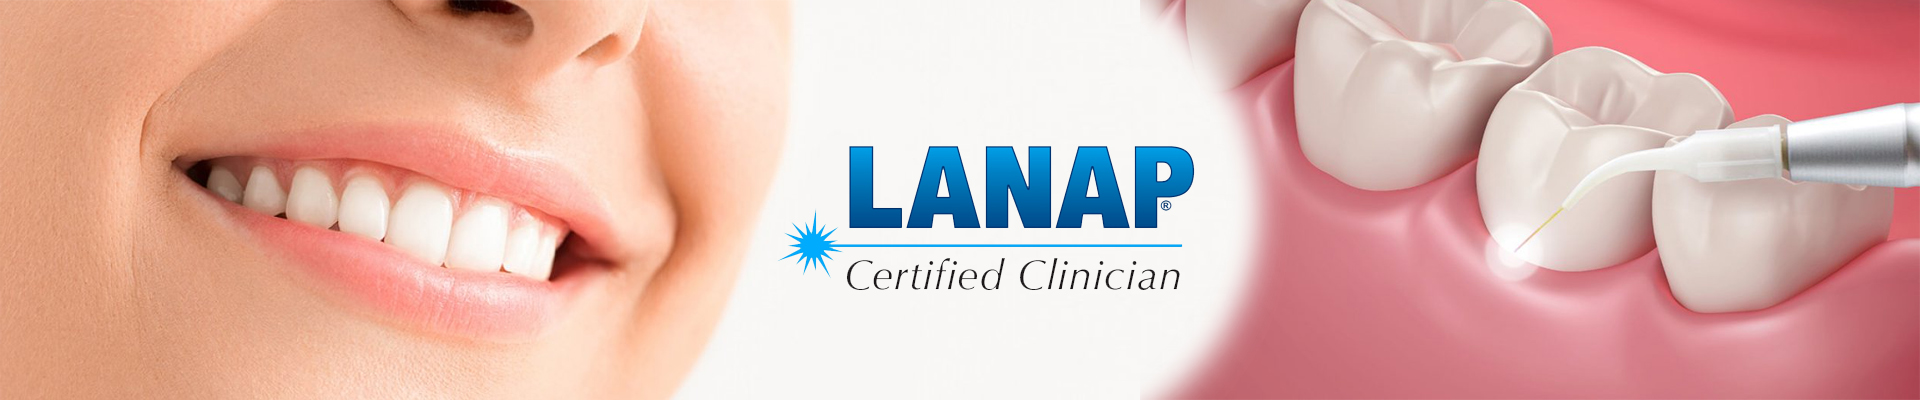 LANAP (новая процедура присоединения с помощью лазера)